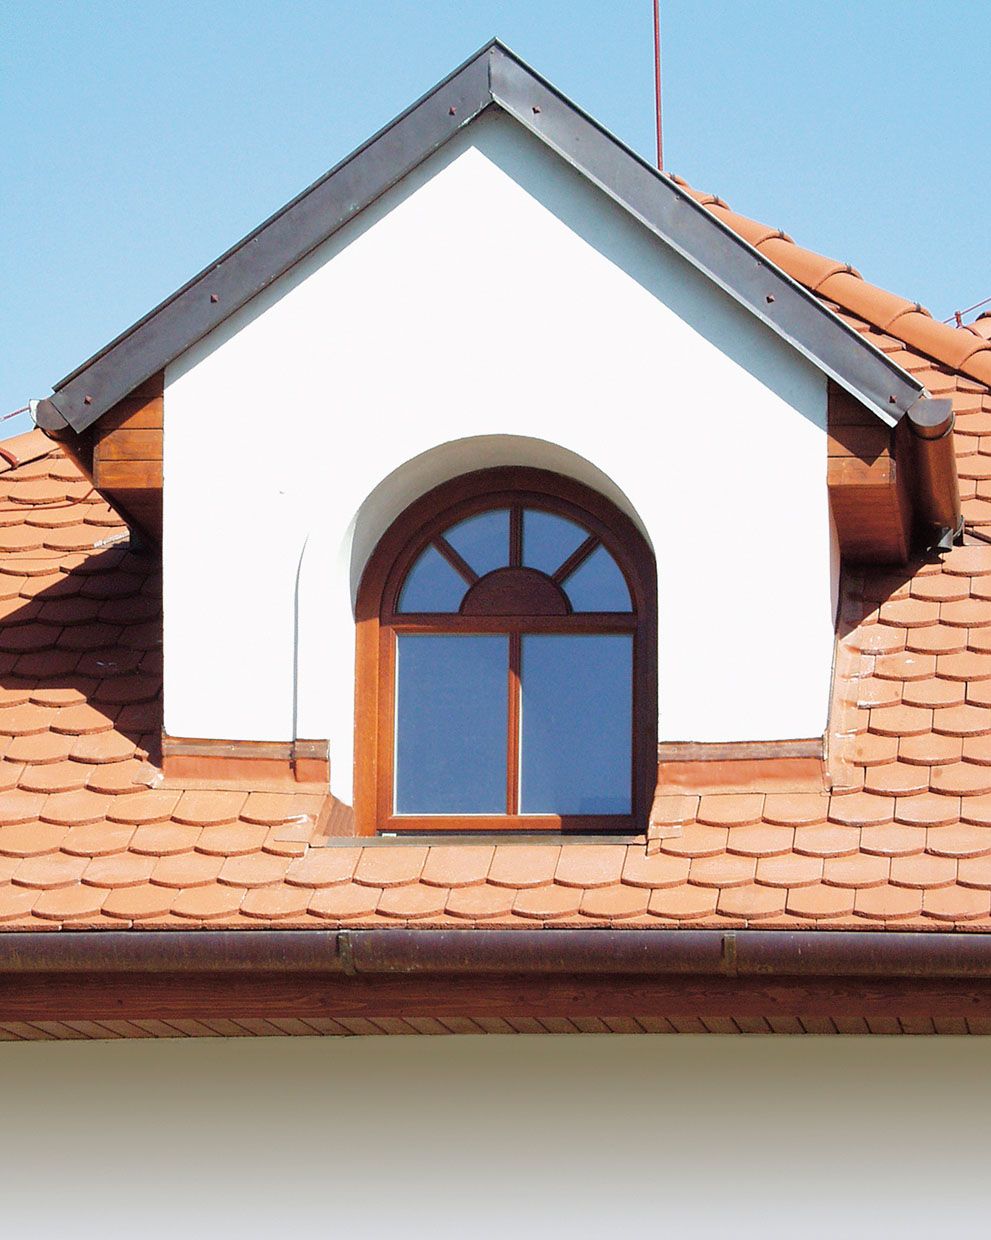 Pro vikýřová okna se hodí hlavně dřevěné rámy. Dřevo umožňuje vytvářet nejrozmanitější tvary, a tím doladit vzhled domu. 